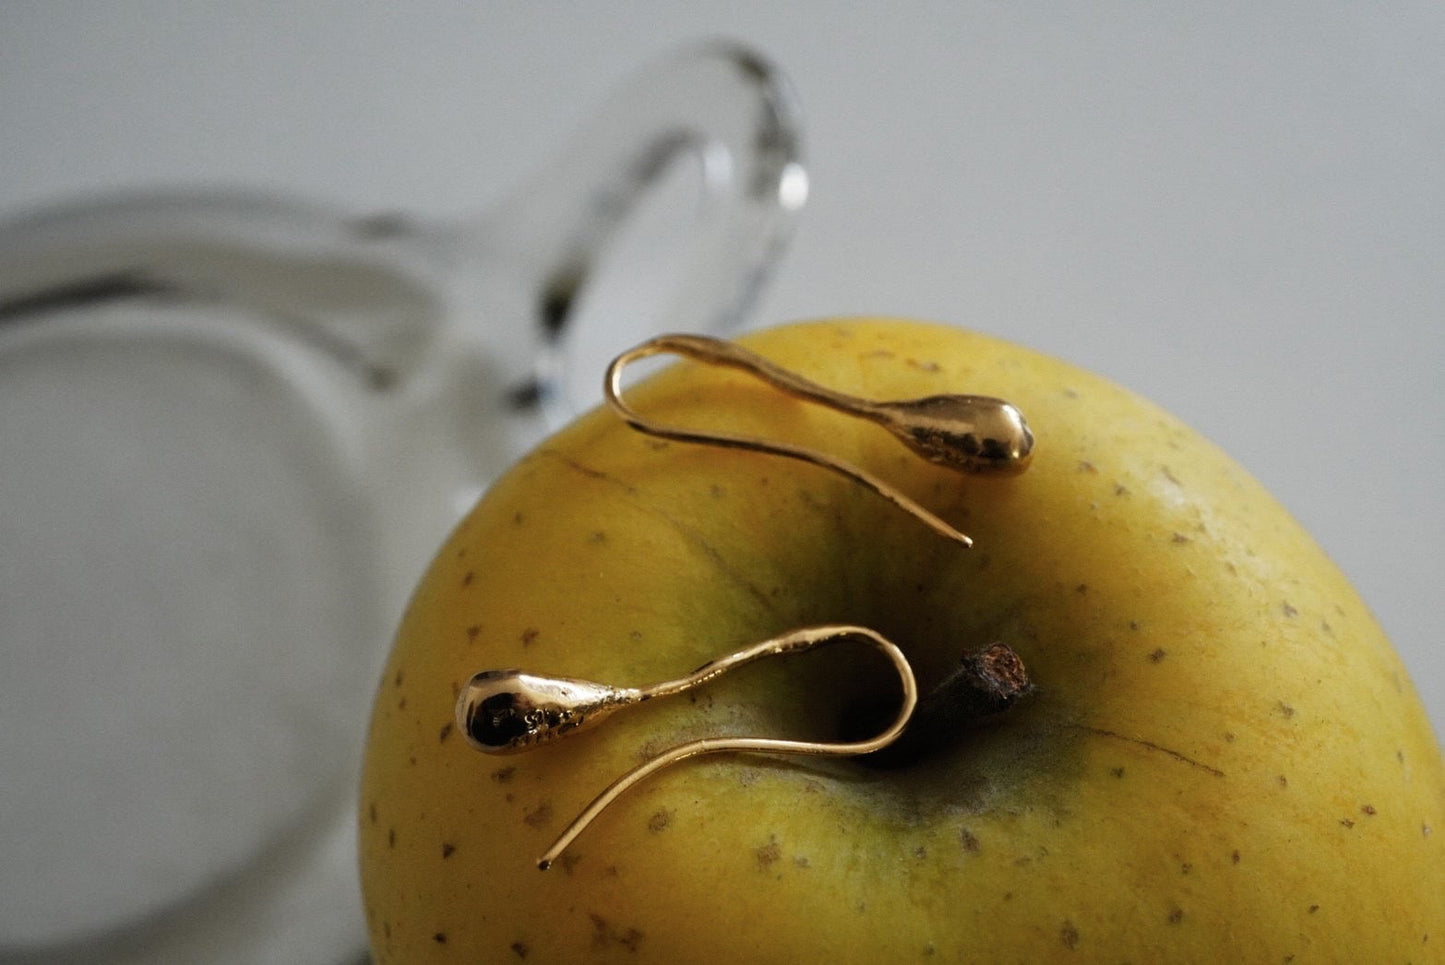 Leaf drop earrings / gold vermeil